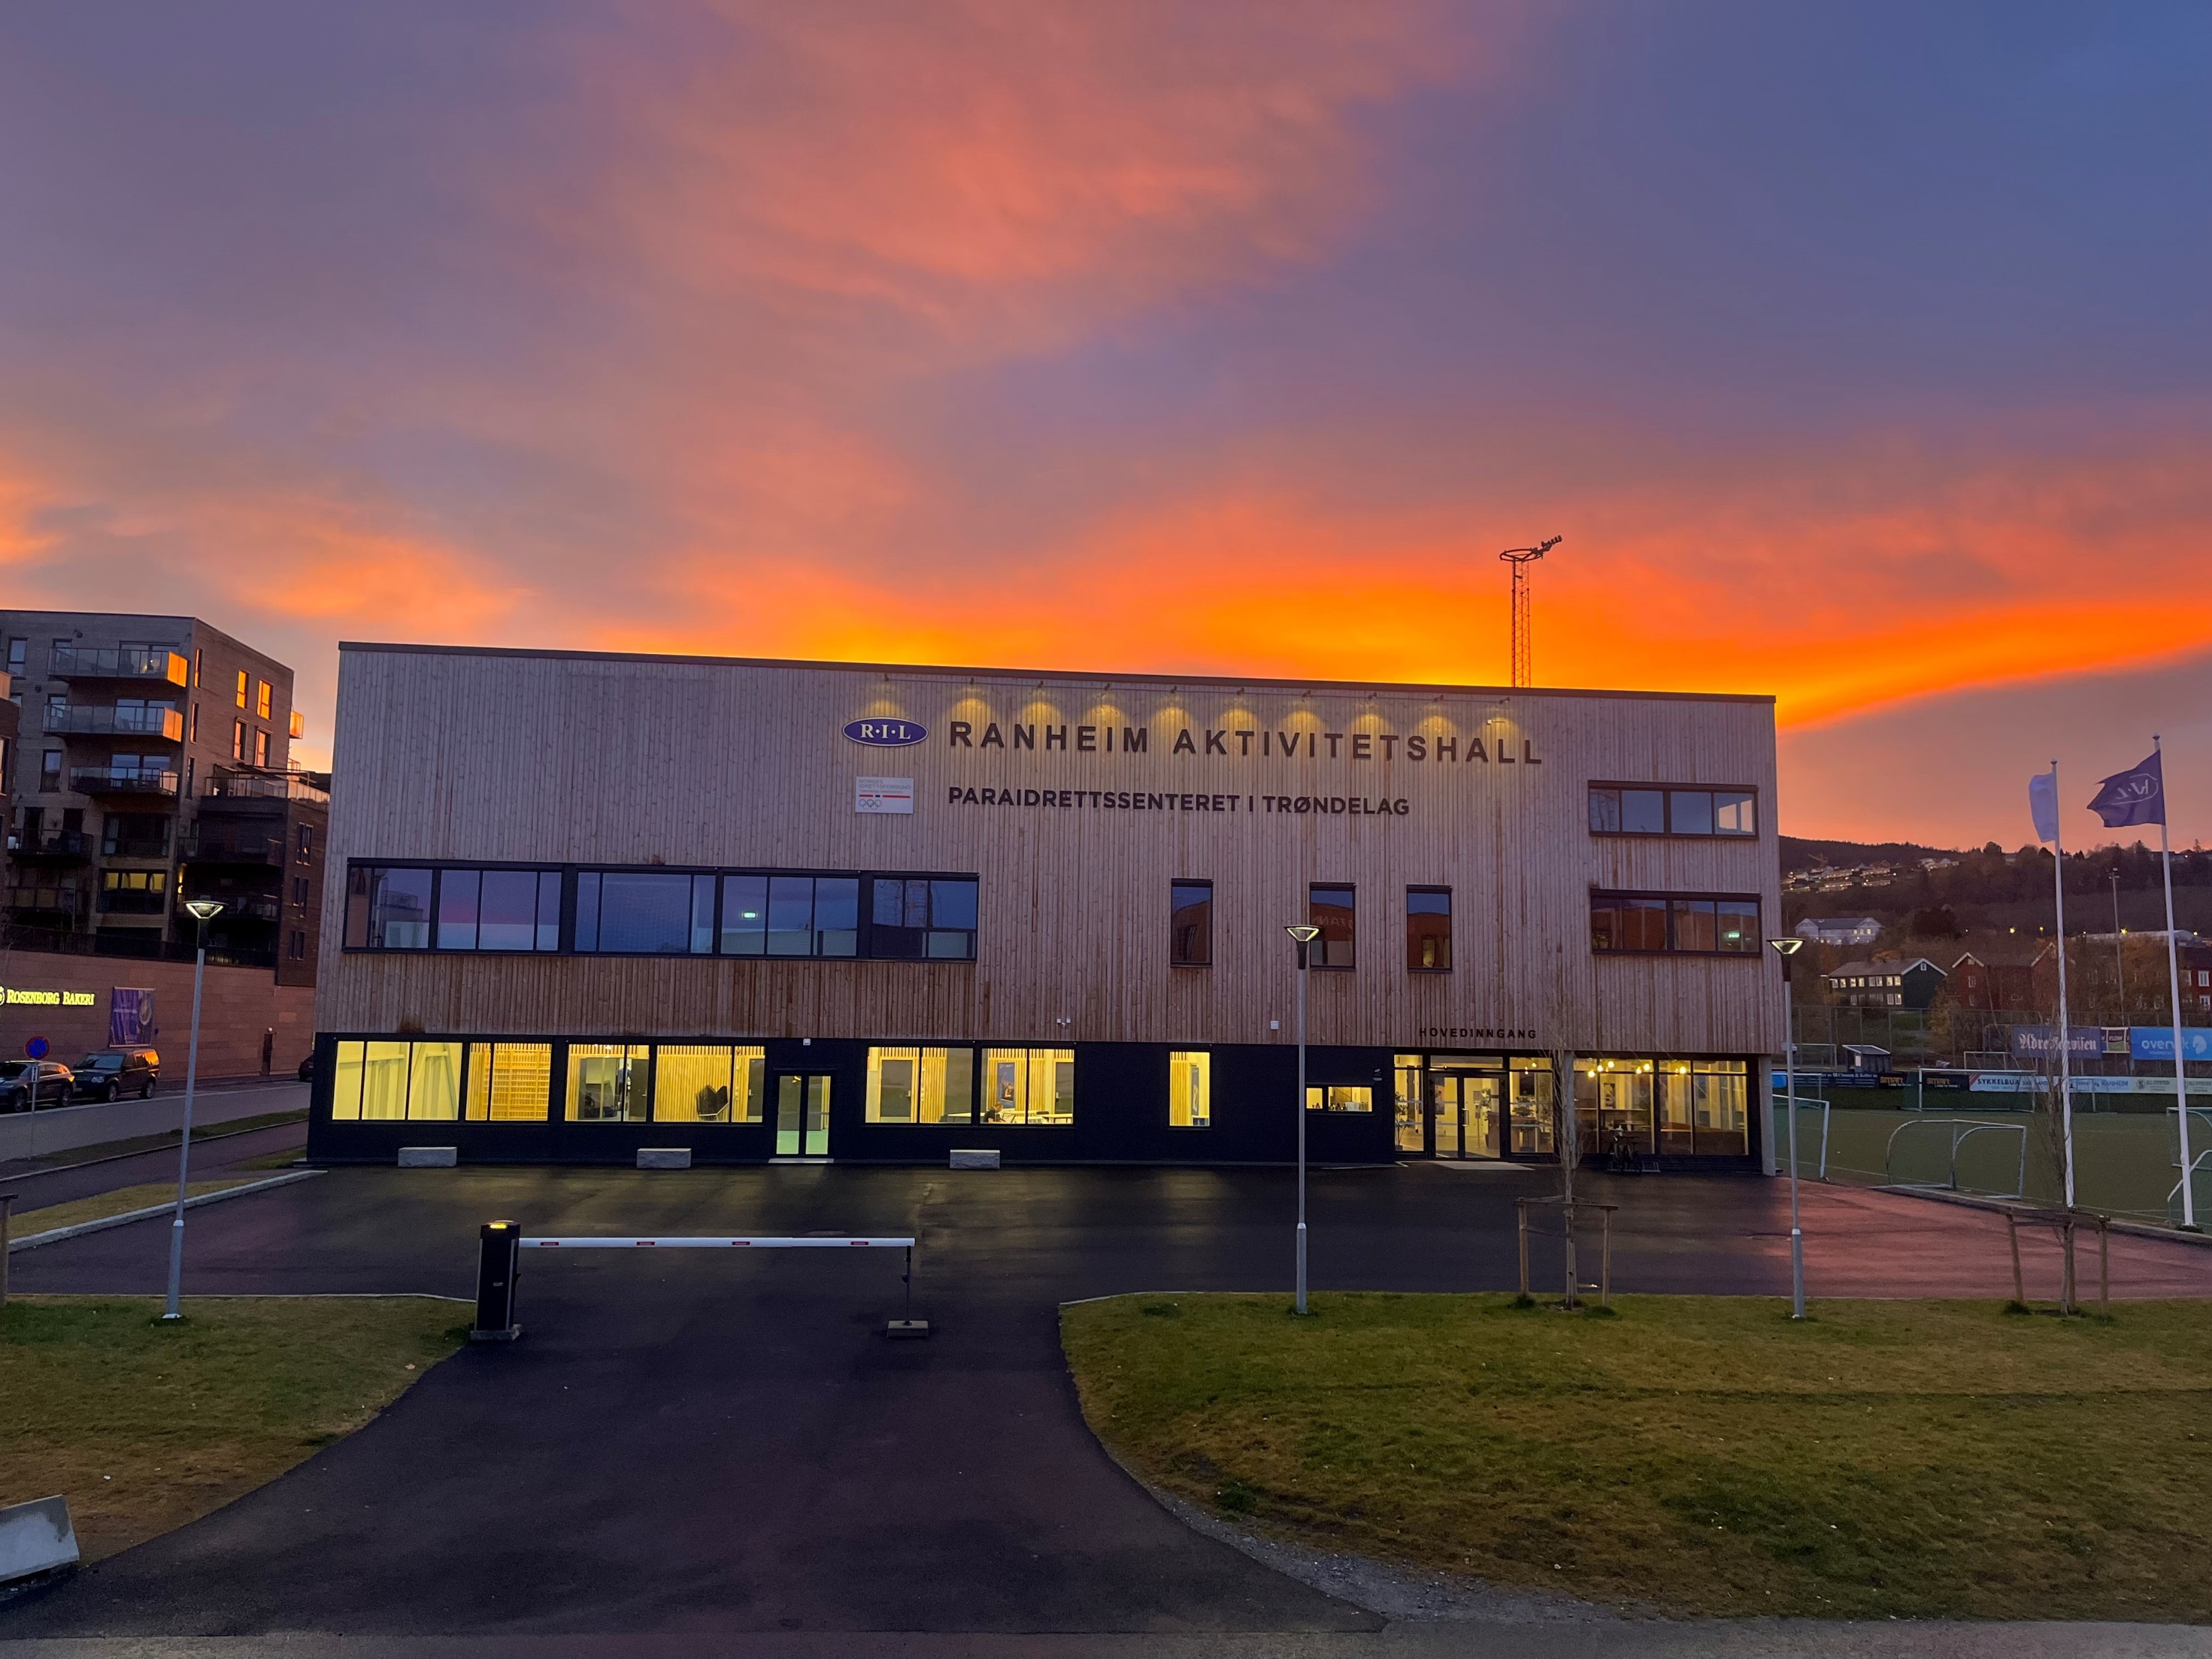 Fasaden til Ranheim Aktivitetshall og Paraidrettssenteret i Trøndelag i solnedgang. Foto: Per-Einar Johannessen